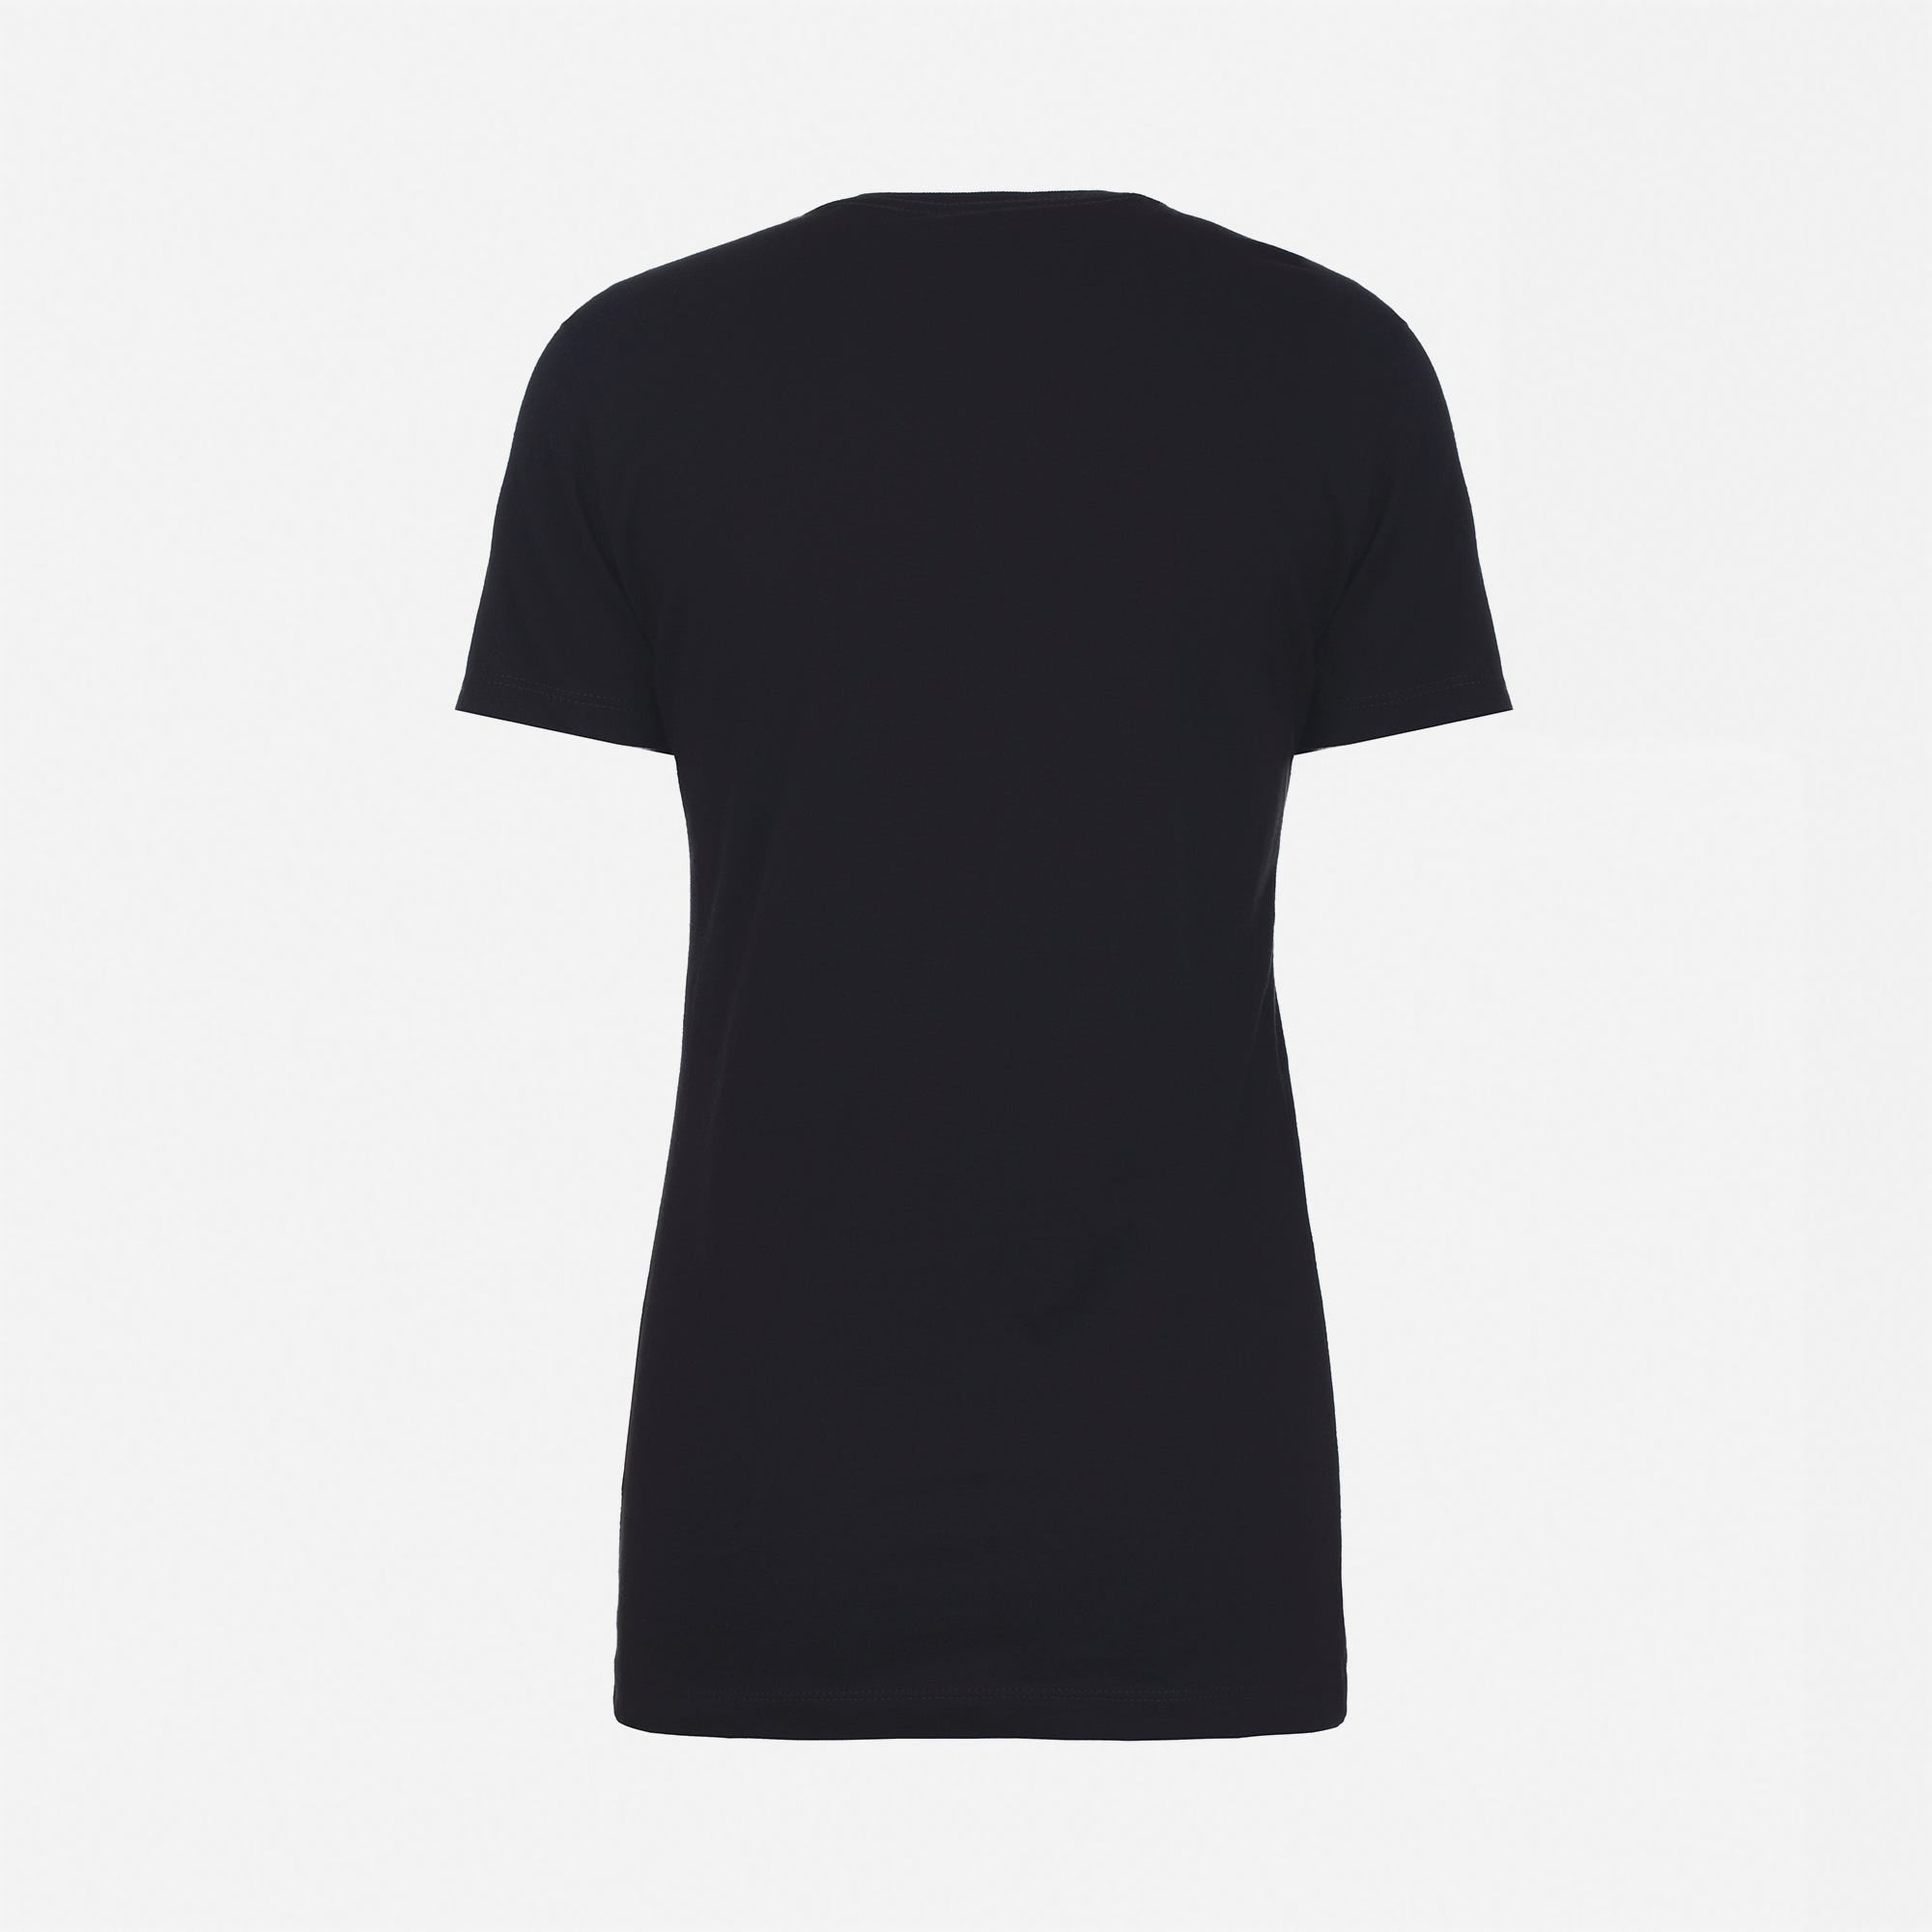 Cotton Boyfriend T-Shirt Black 3900 Next Level Apparel Women's Back View Wholesale